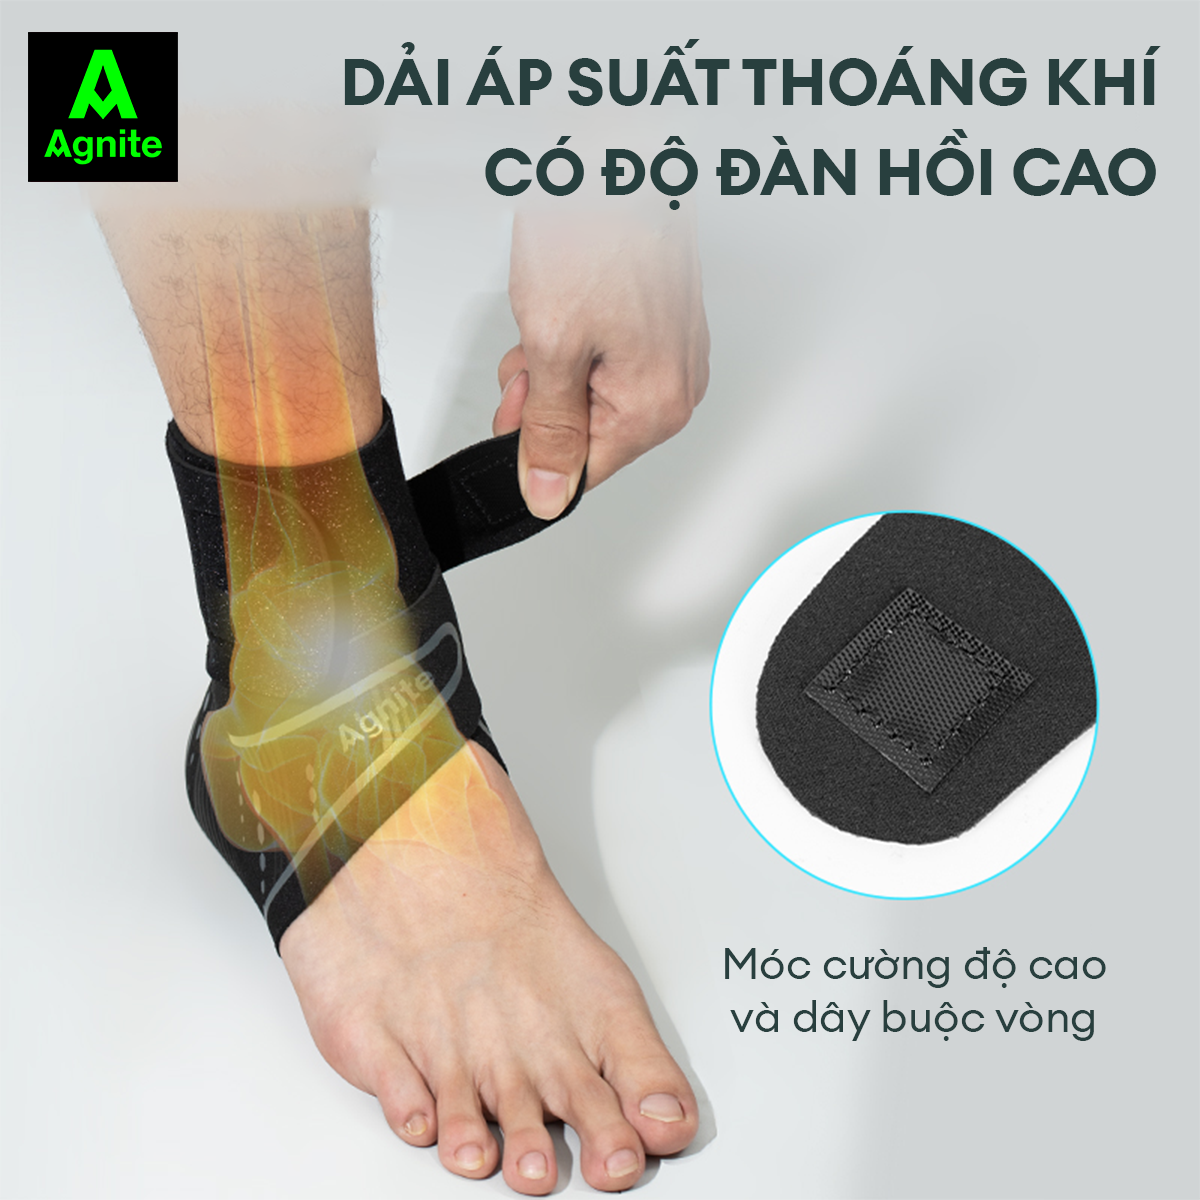 Hình ảnh [1 đôi] Đai cổ chân, băng quấn bảo vệ mắt cá chân Agnite chính hãng, cao cấp, thích hợp sử dụng nhiều môn thể thao